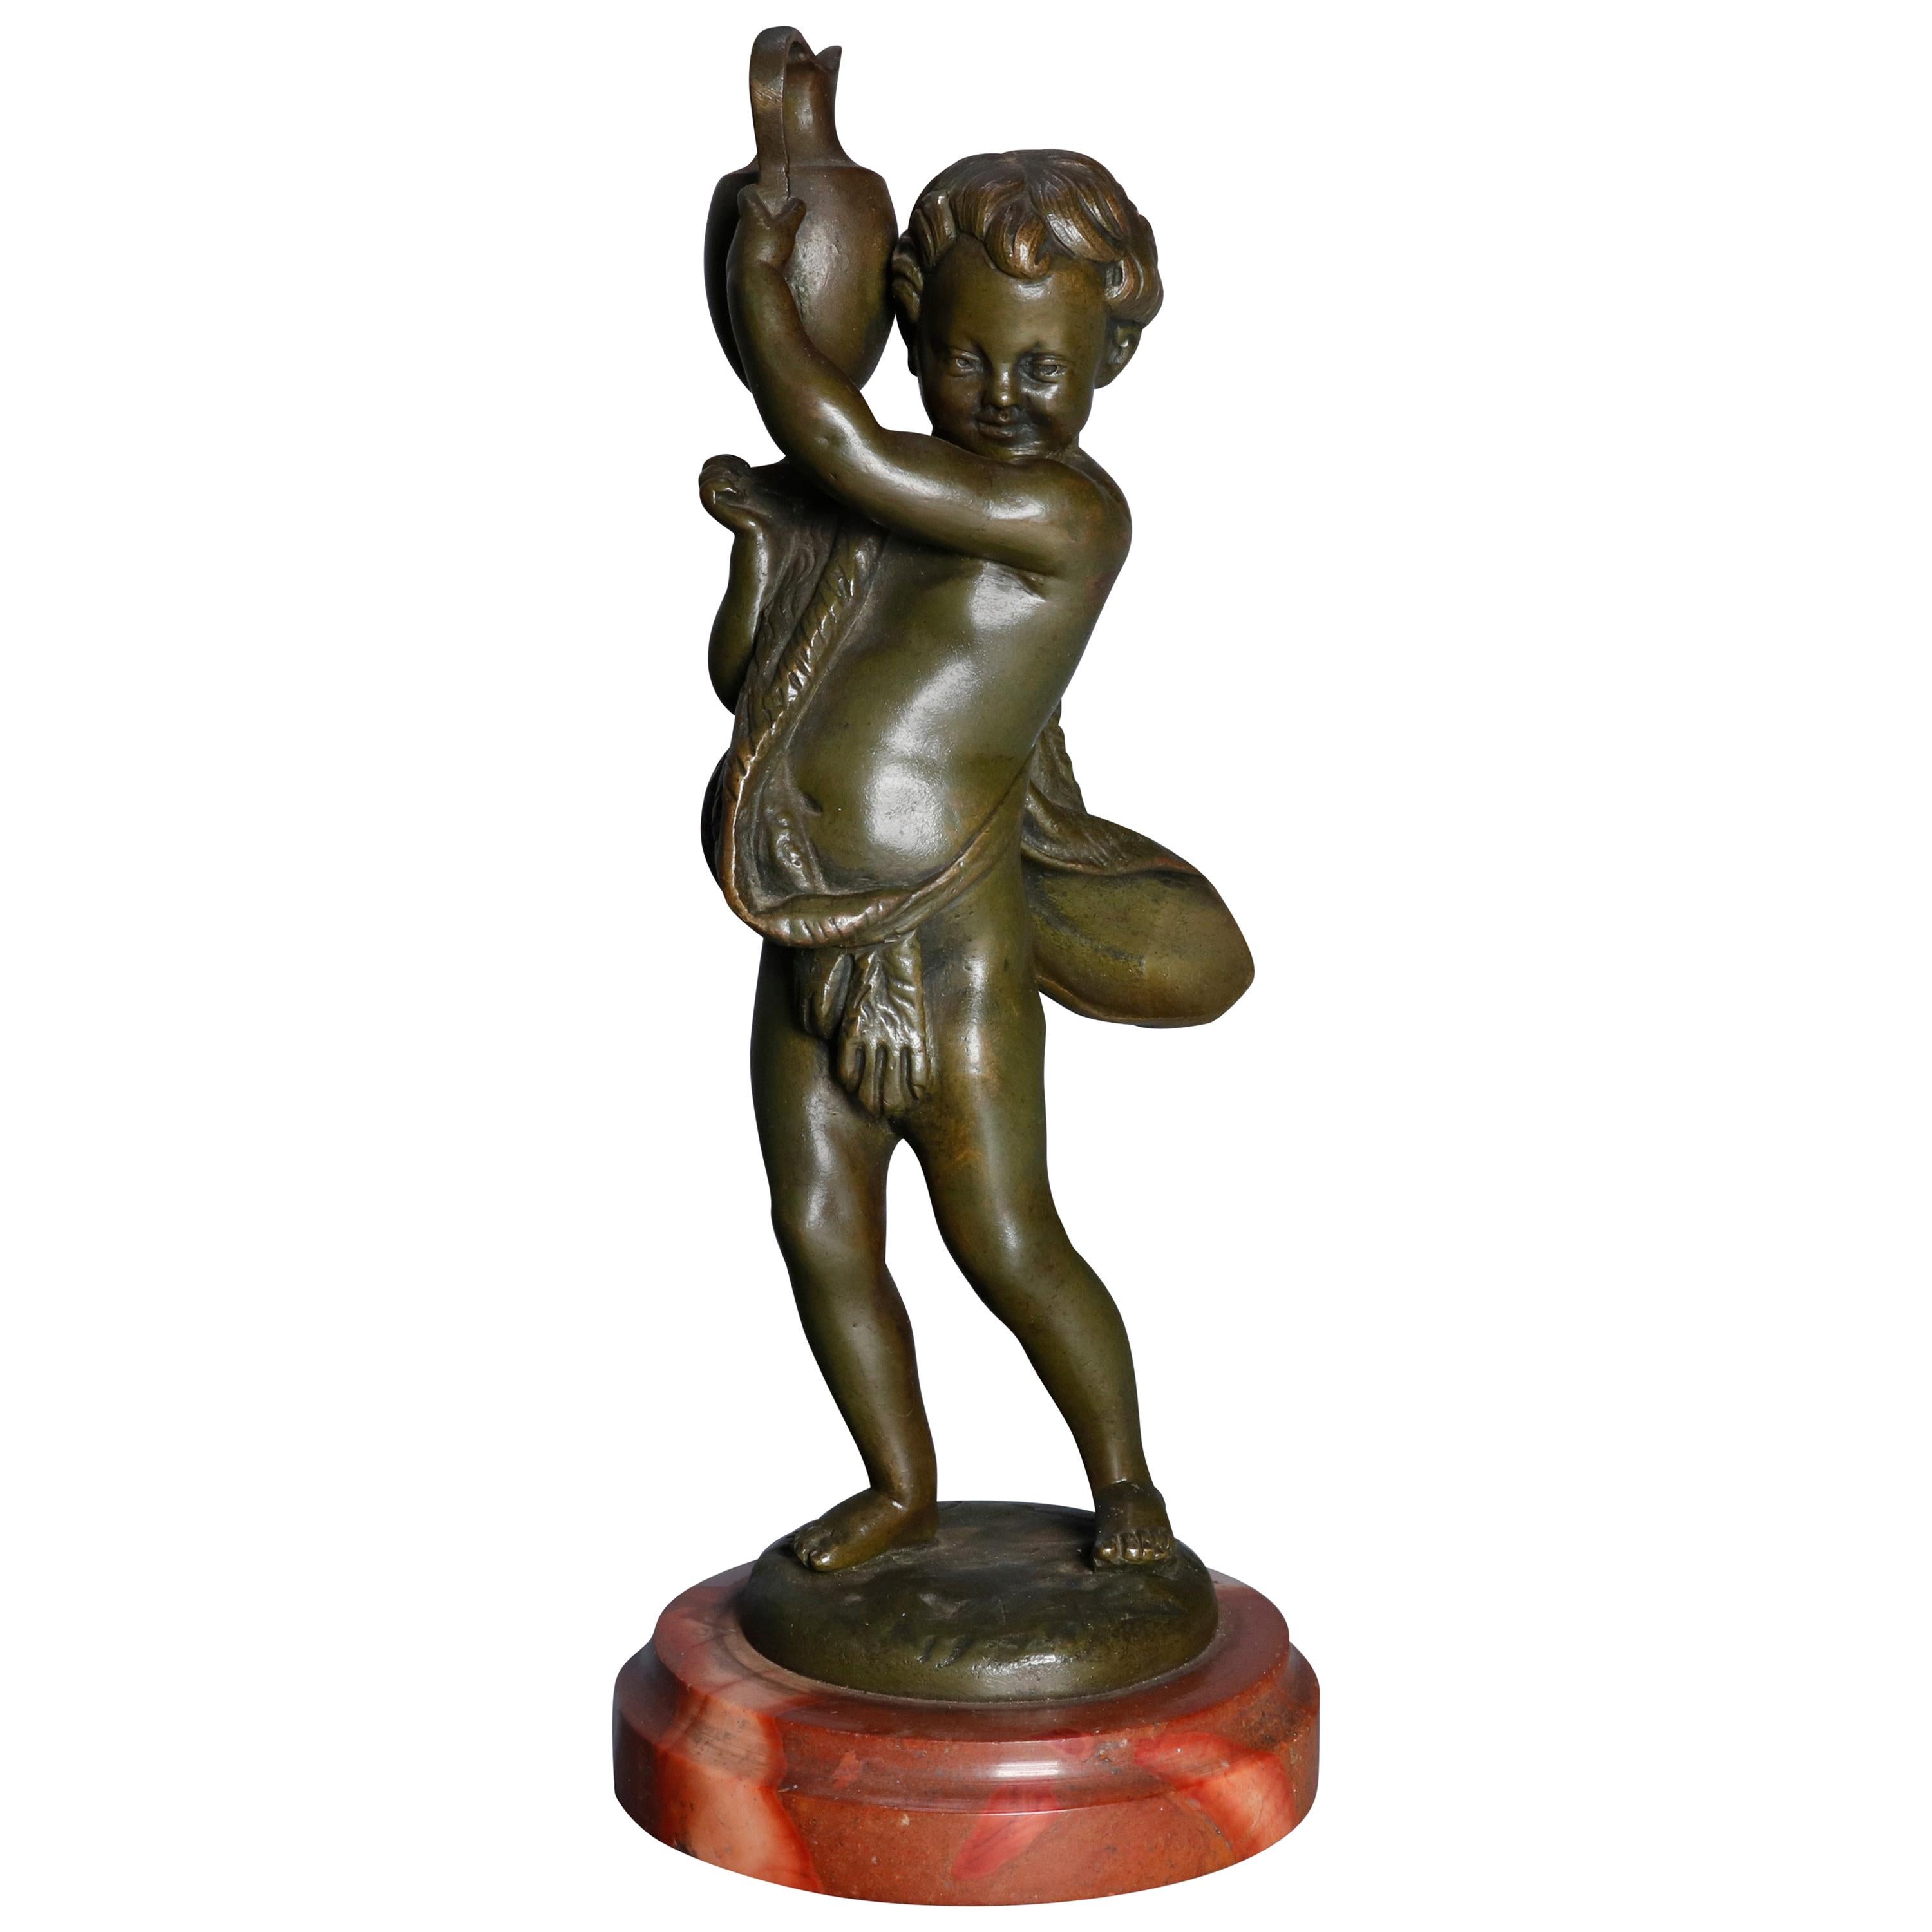 Antique French Figural Classical Cherub Bronze Sculpture, circa 1890